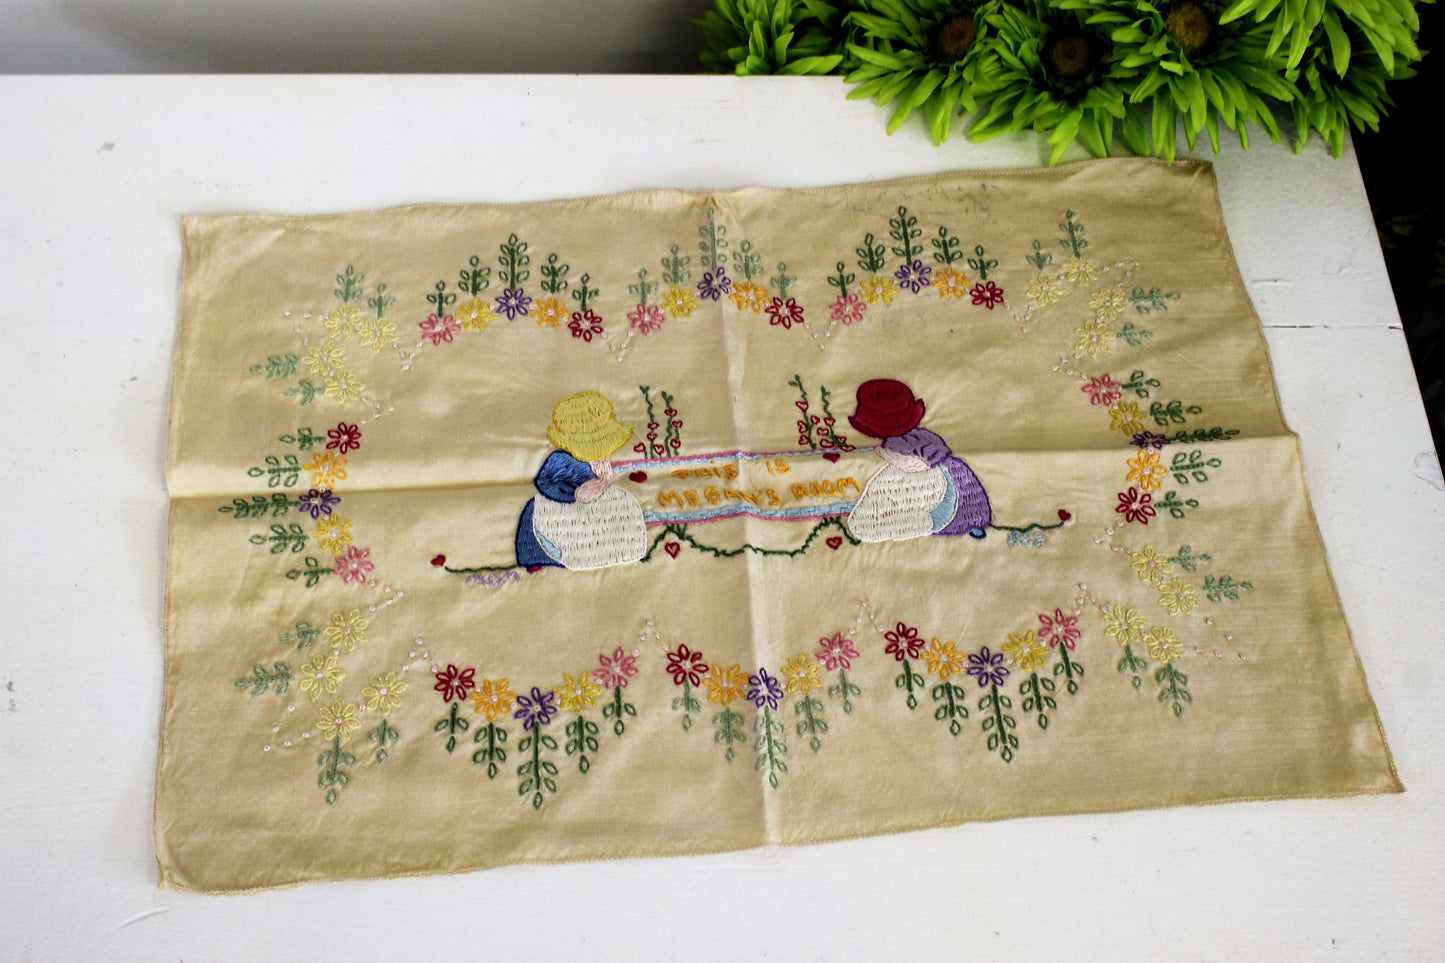 Vintage 1980s Embroidery Sampler Finished with Megans Room